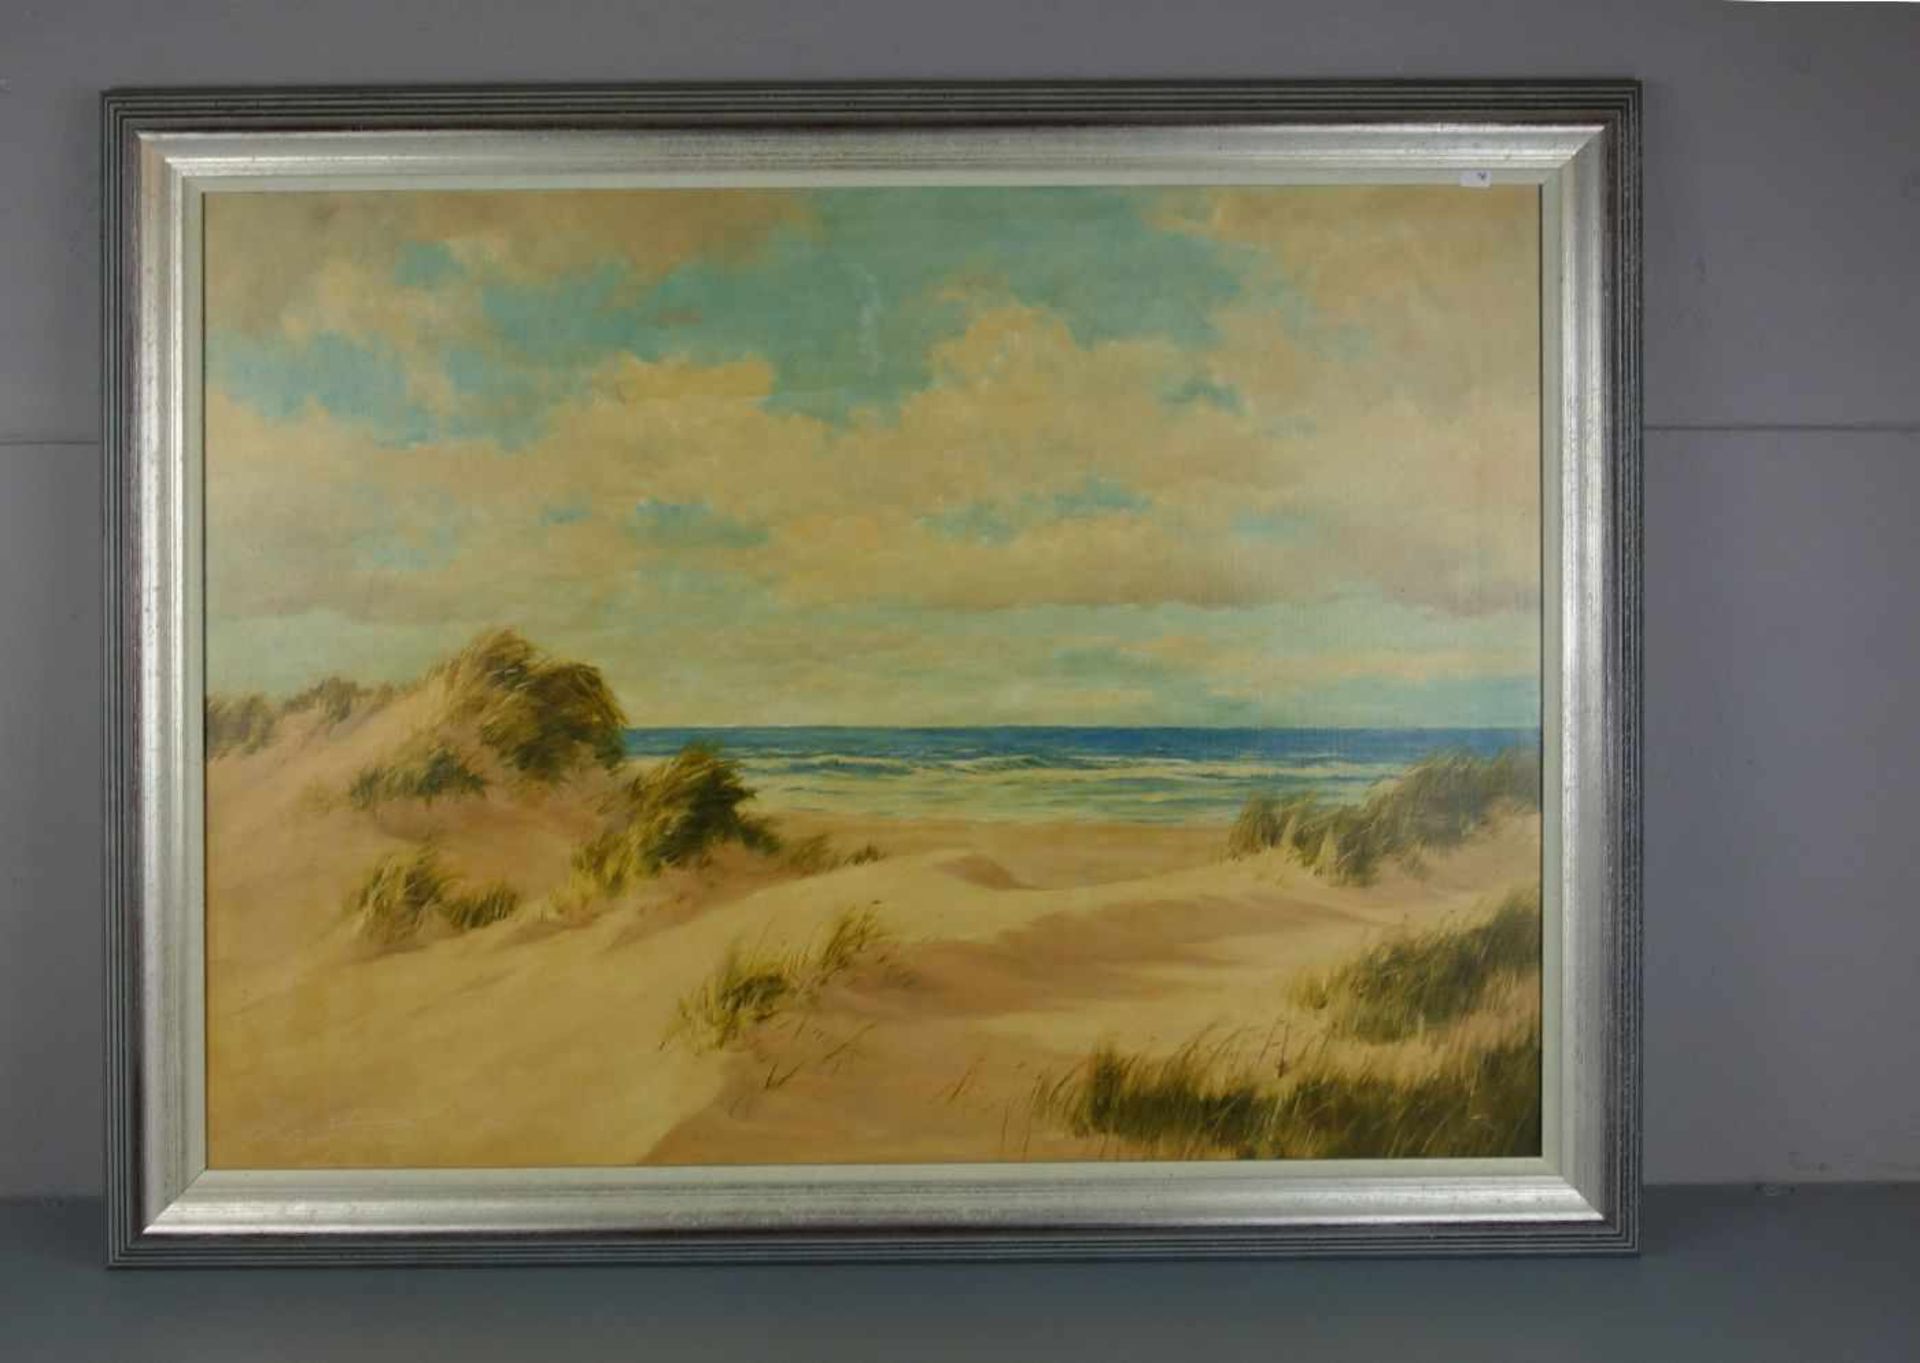 FREYBERG, EDGAR (geb. 1927 in Berlin), Gemälde / painting: "Küstenlandschaft mit Dünen", Öl auf